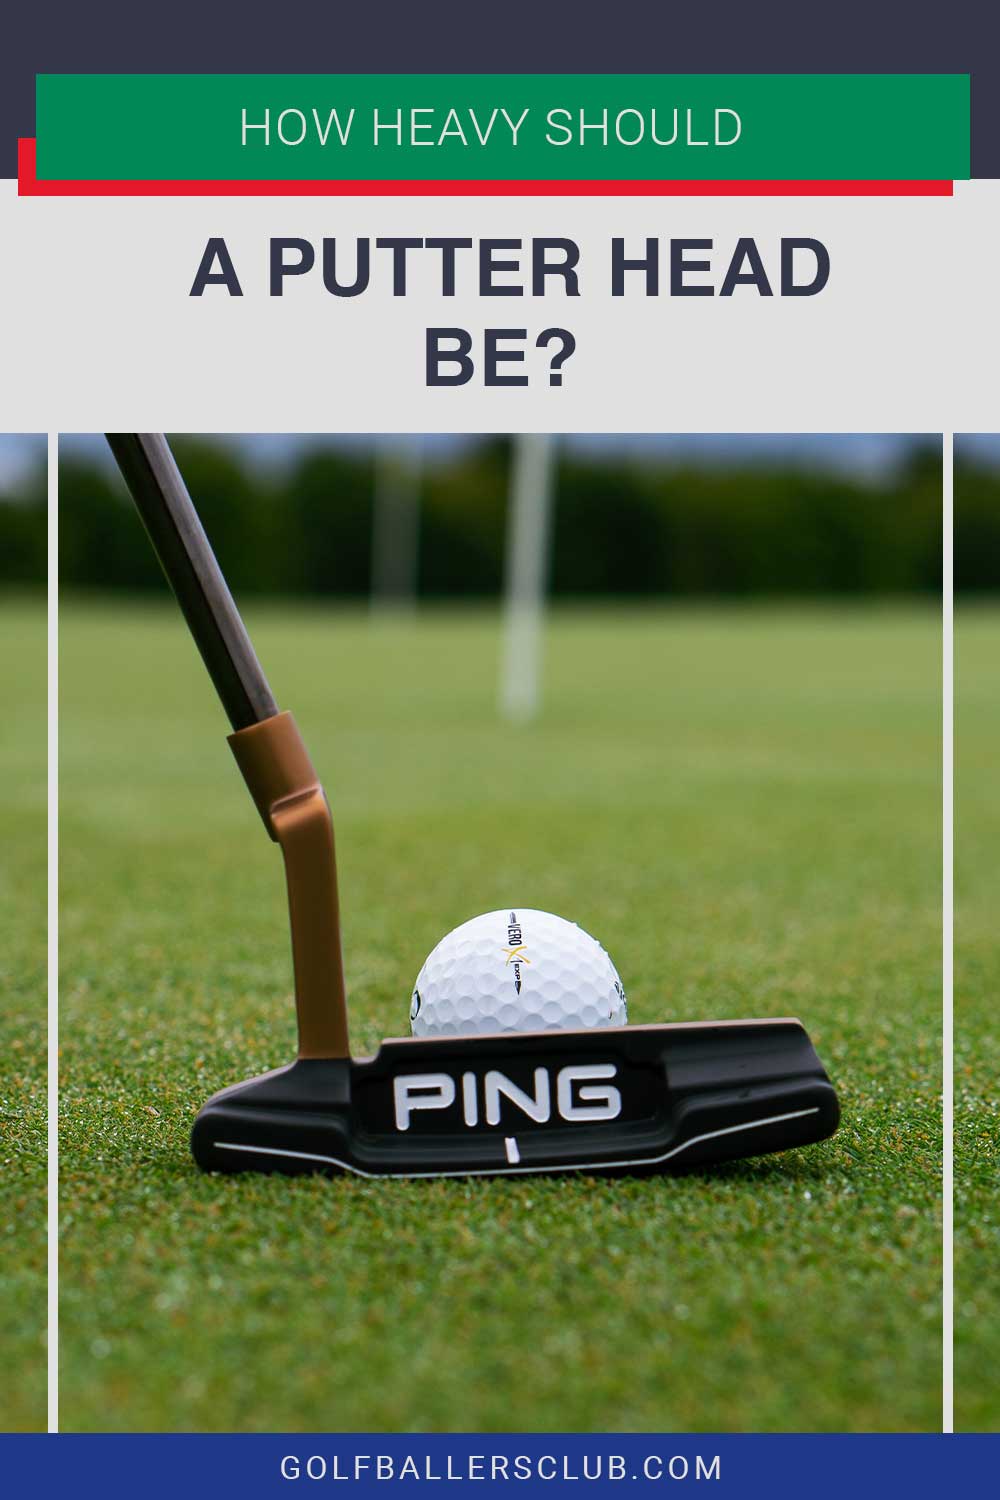 A putter head near a golf ball - How Heavy Should a Putter Head Be?